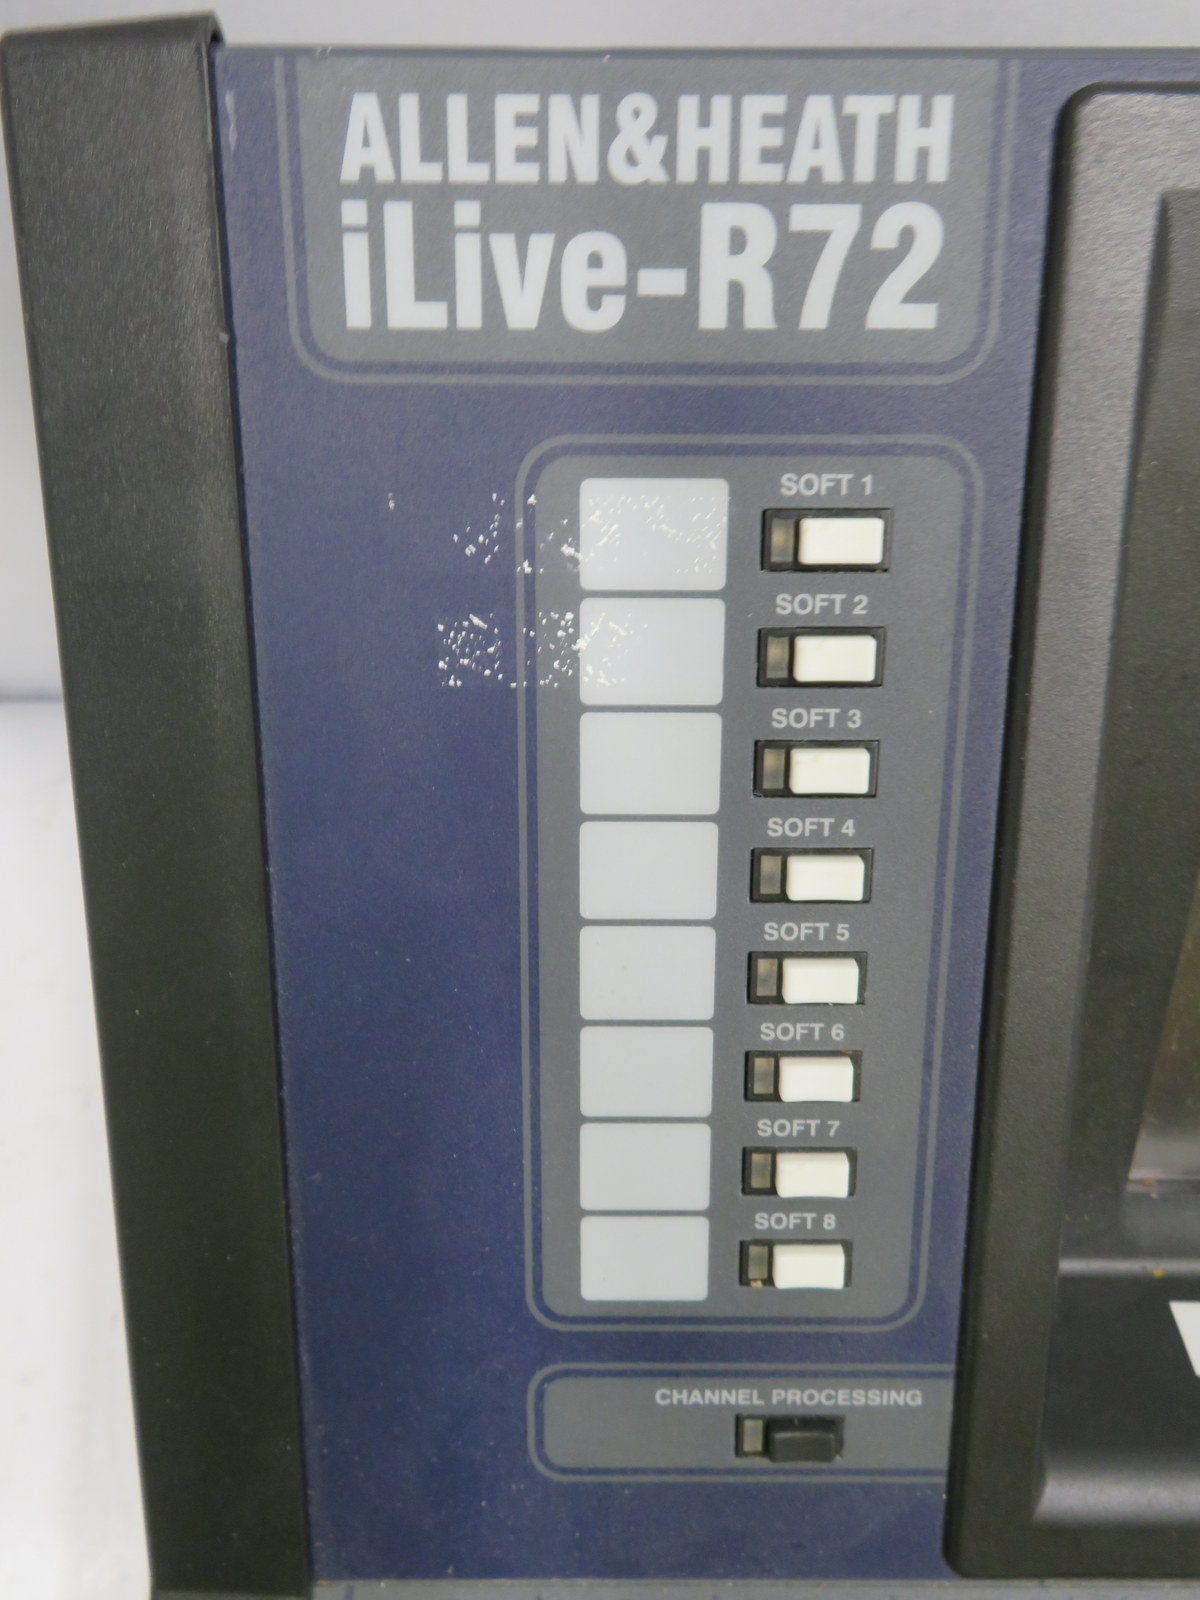 Allen & Heath iLive-R72 mixing desk in flight case. Serial number: 720762. - Image 4 of 9